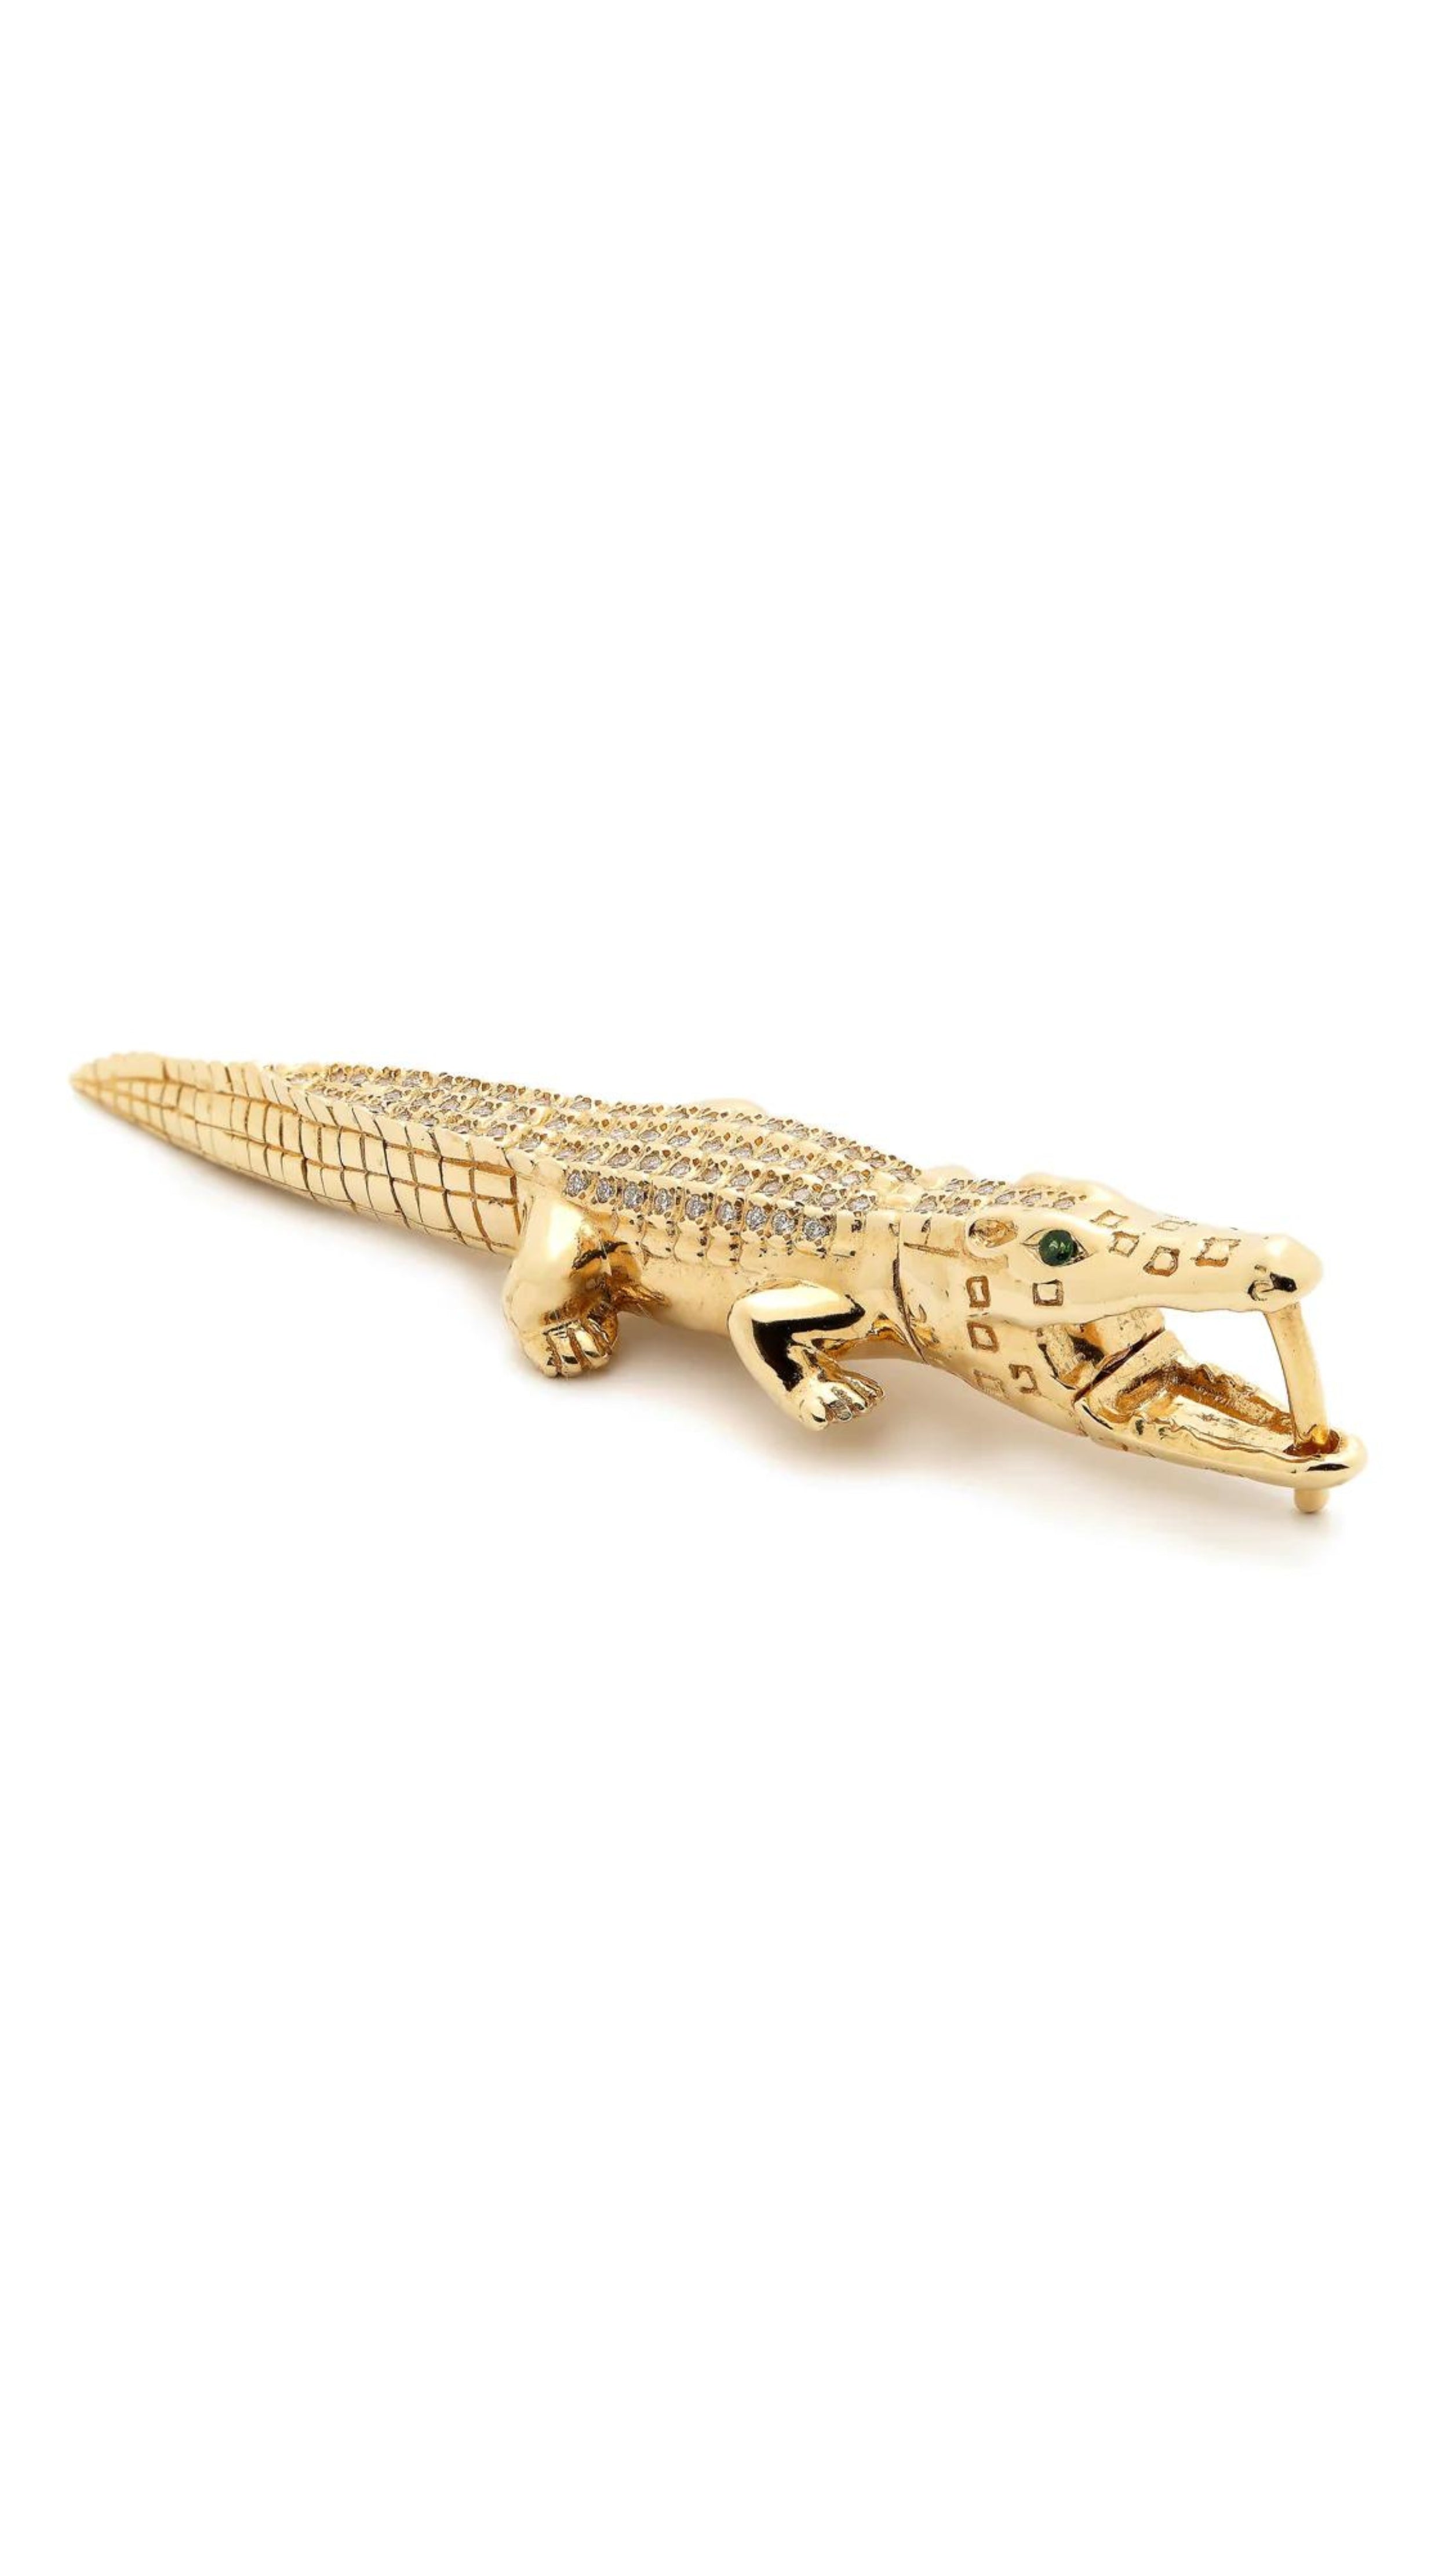 Bibi van der Velden, Alligator Bite Diamond Earring. Single alligator earring crafted in 18K gold with white diamond pace body. Shown sitting.